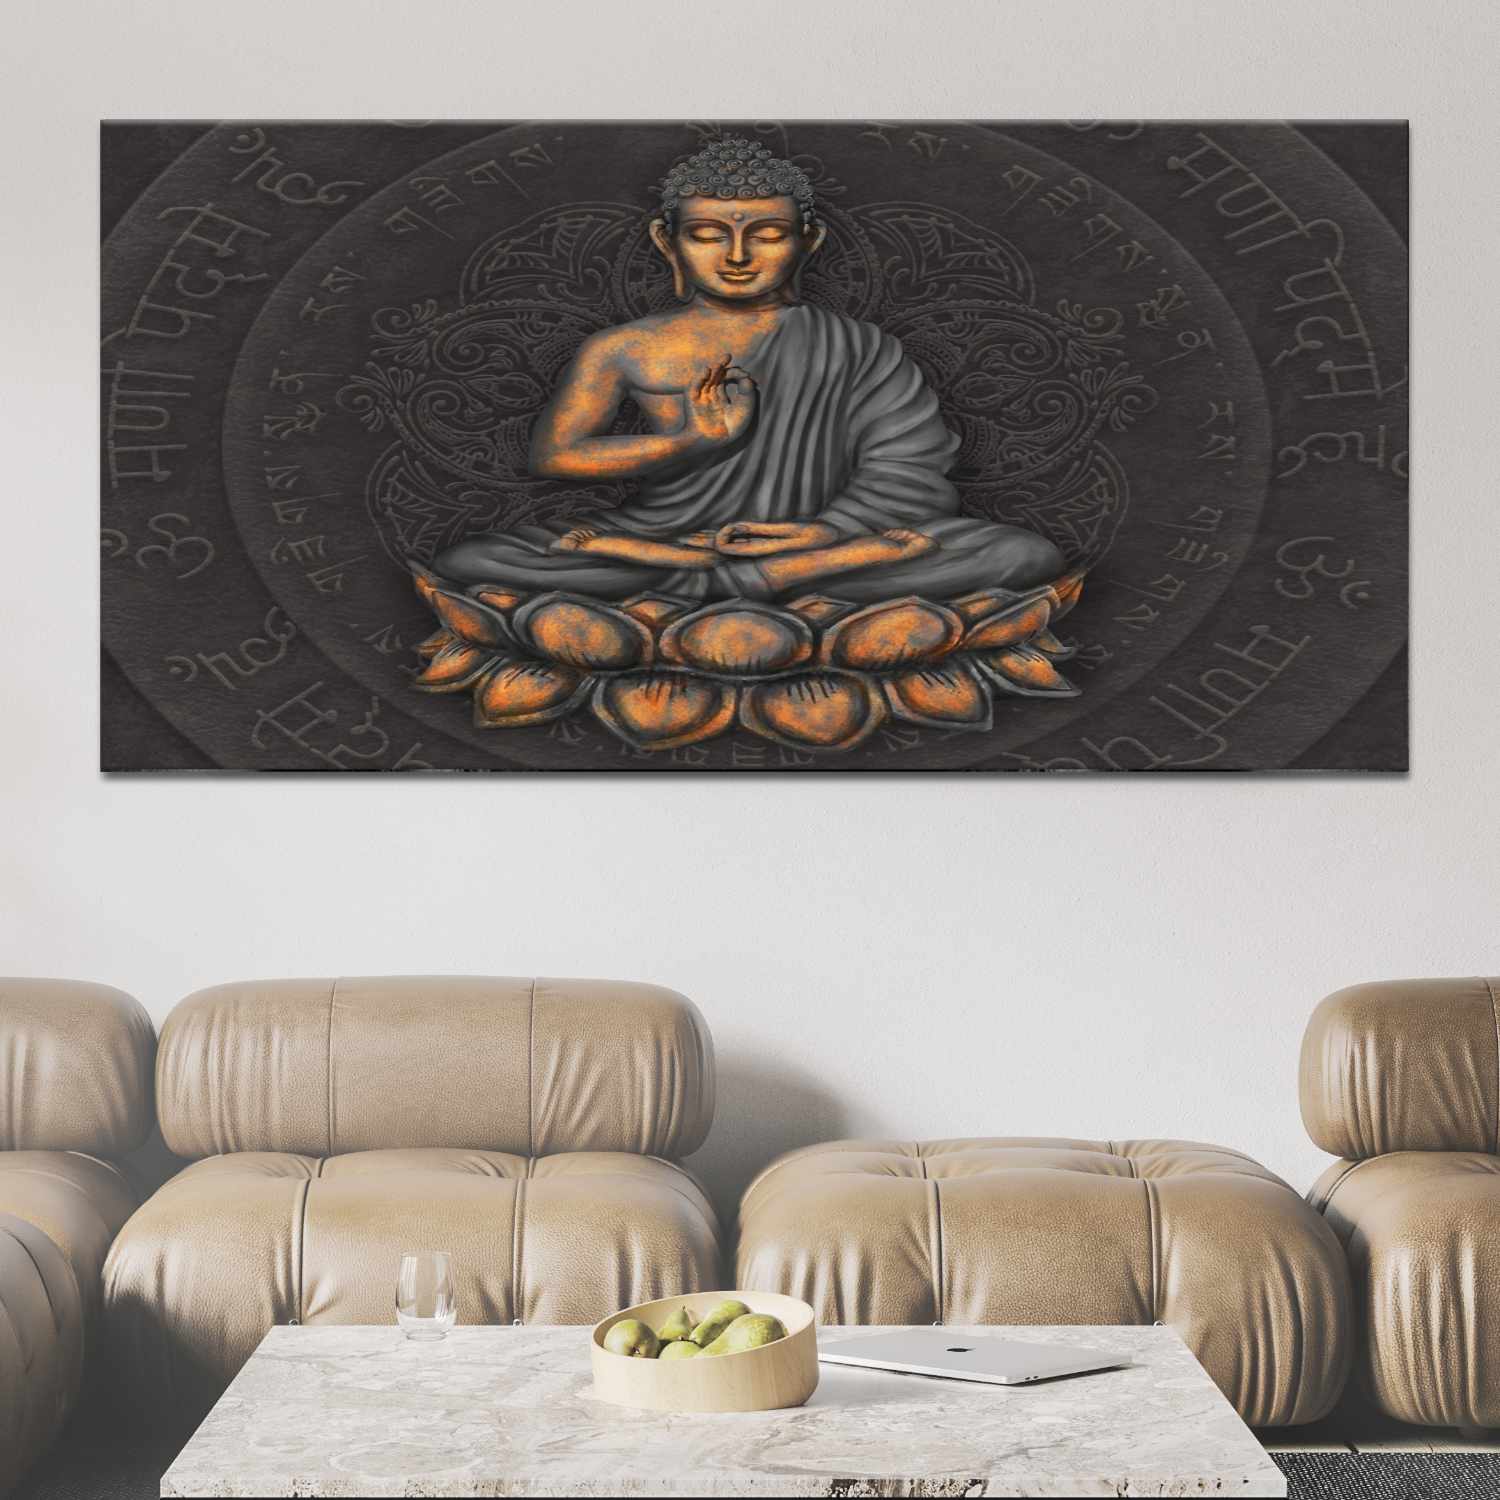 Buddhatavla och sanskritskrift Buddhatavla Zentavla